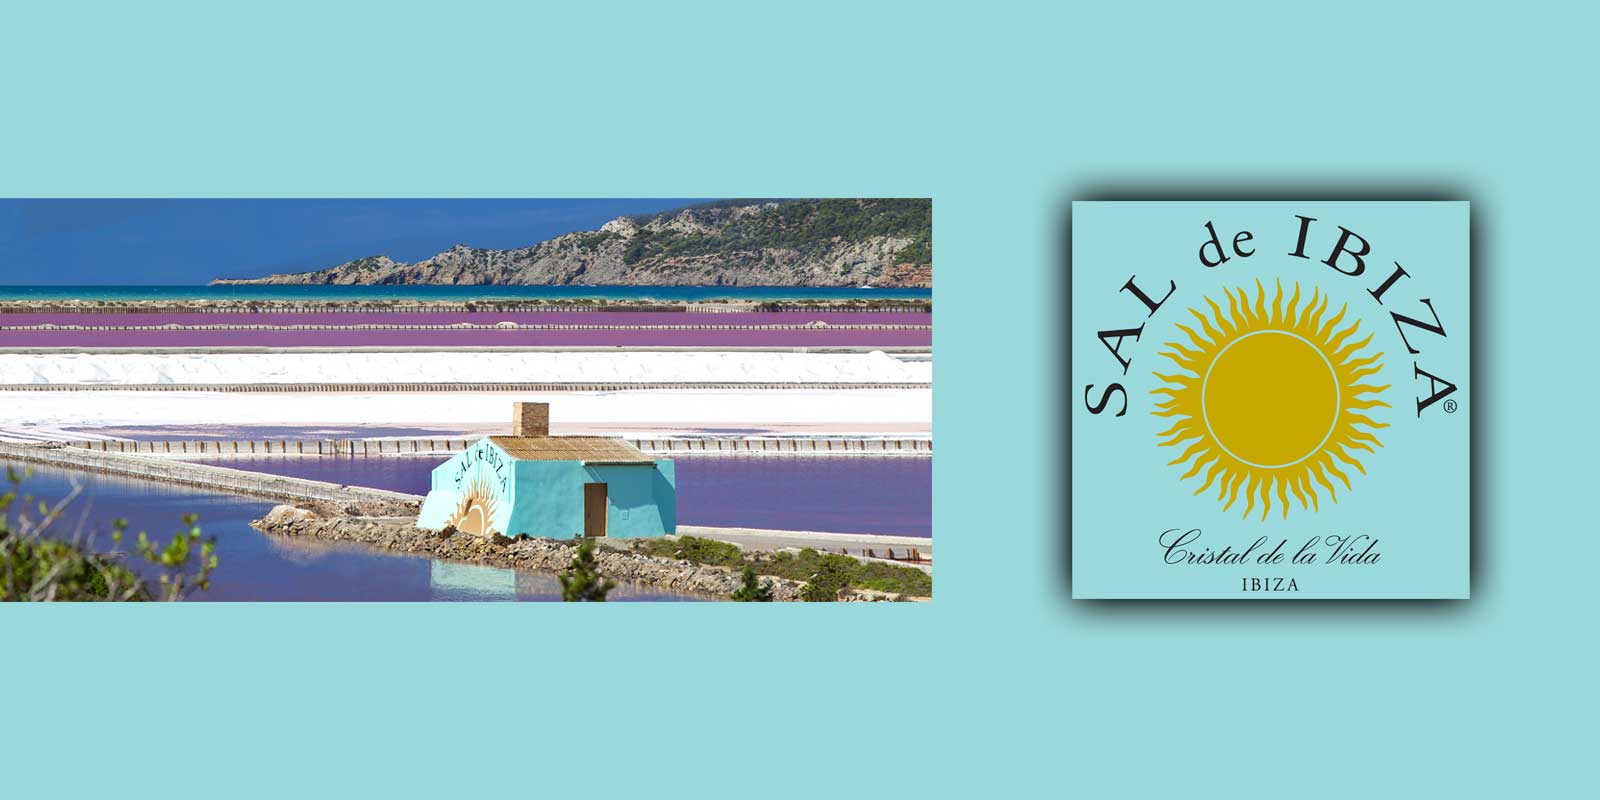 SAL de IBIZA Fleur de Sel erhalls i naturreservaten i saltgruvorna pa Ibiza. De sma omtaliga kristallerna bildas bara nar det ar mycket sol, lag luftfuktighet och konstant vind.